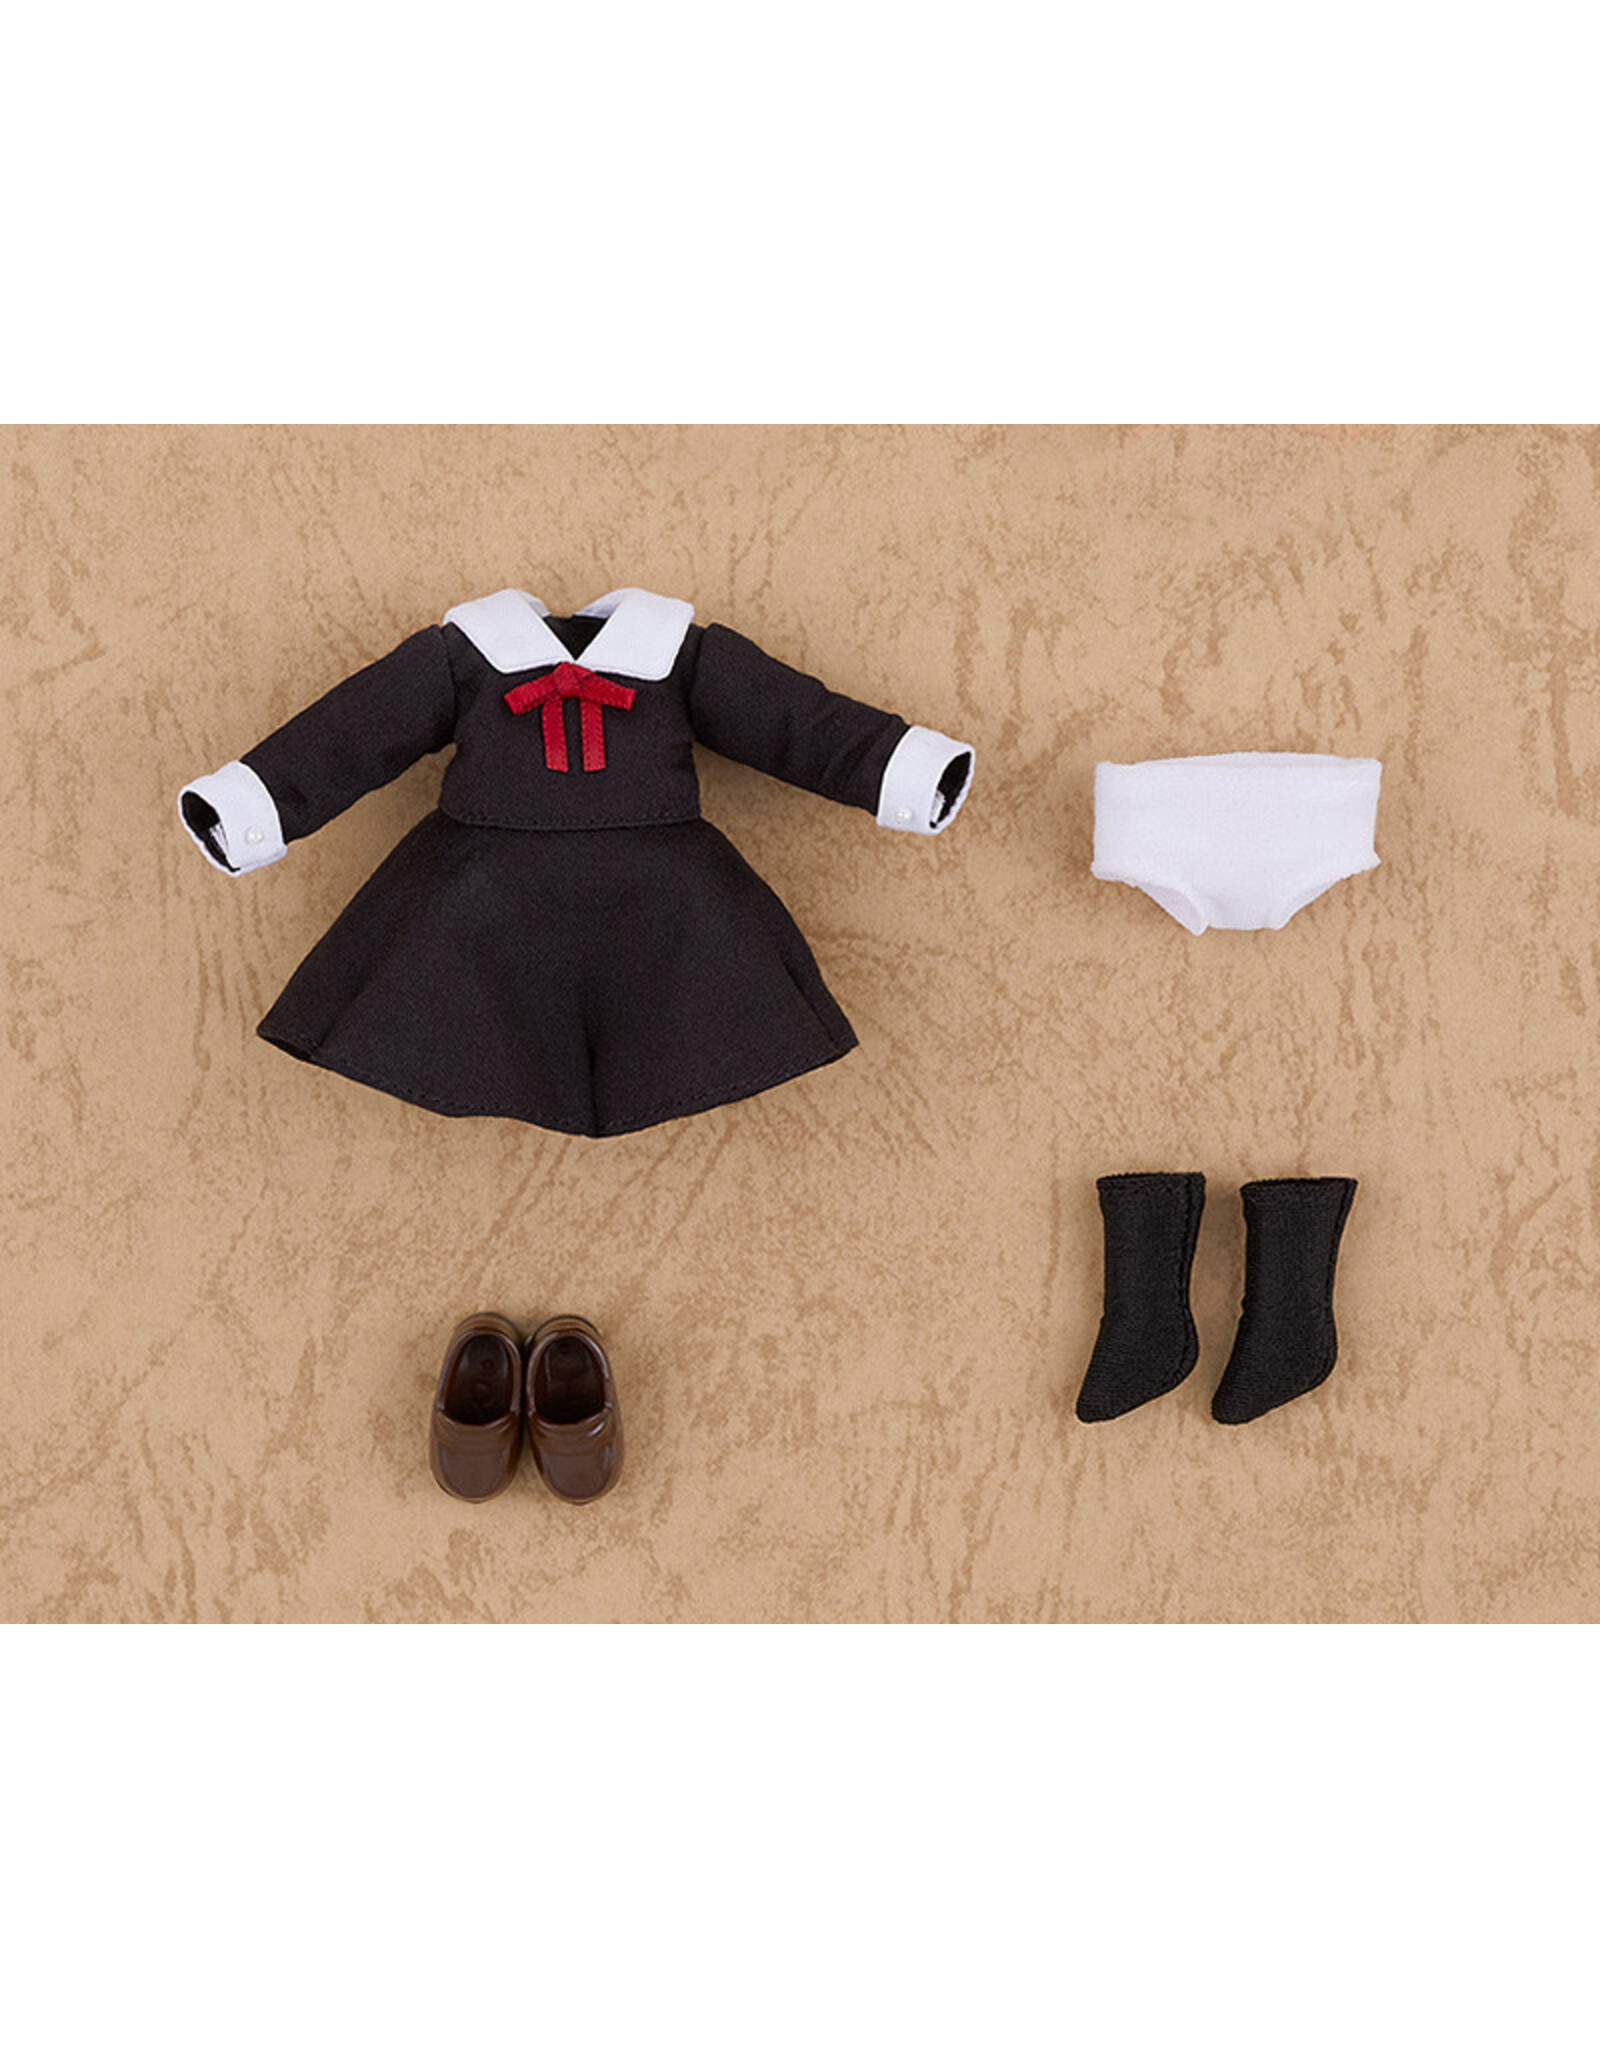 Nendoroid Doll: Outfit - Kaguya-Sama Shuchiin Uniform Girl